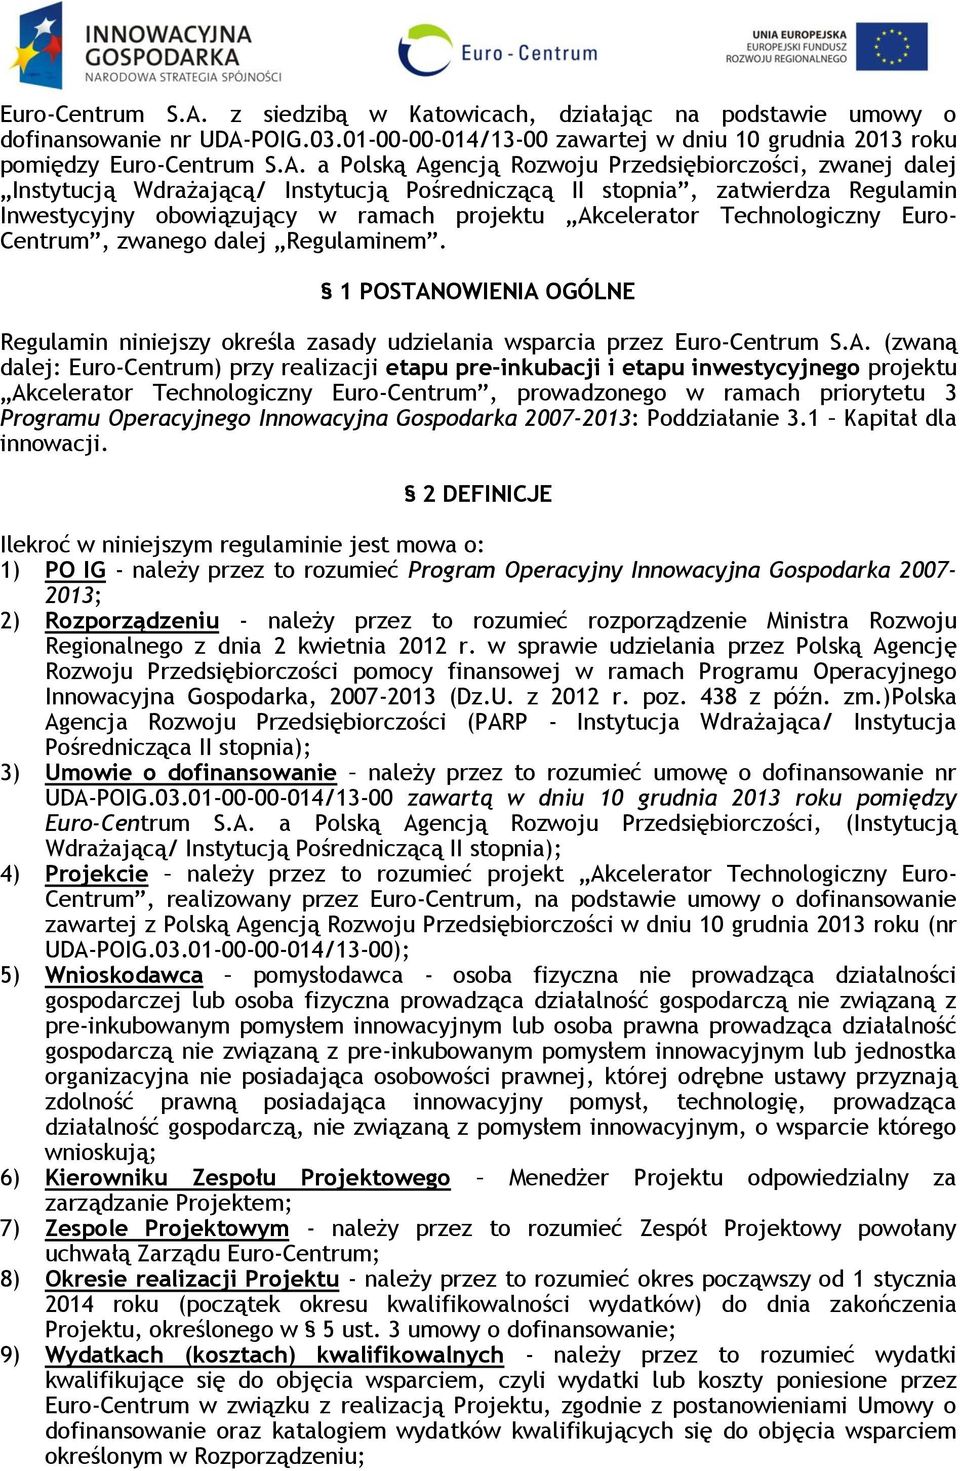 01-00-00-014/13-00 zawartej w dniu 10 grudnia 2013 roku pomiędzy  a Polską Agencją Rozwoju Przedsiębiorczości, zwanej dalej Instytucją Wdrażającą/ Instytucją Pośredniczącą II stopnia, zatwierdza